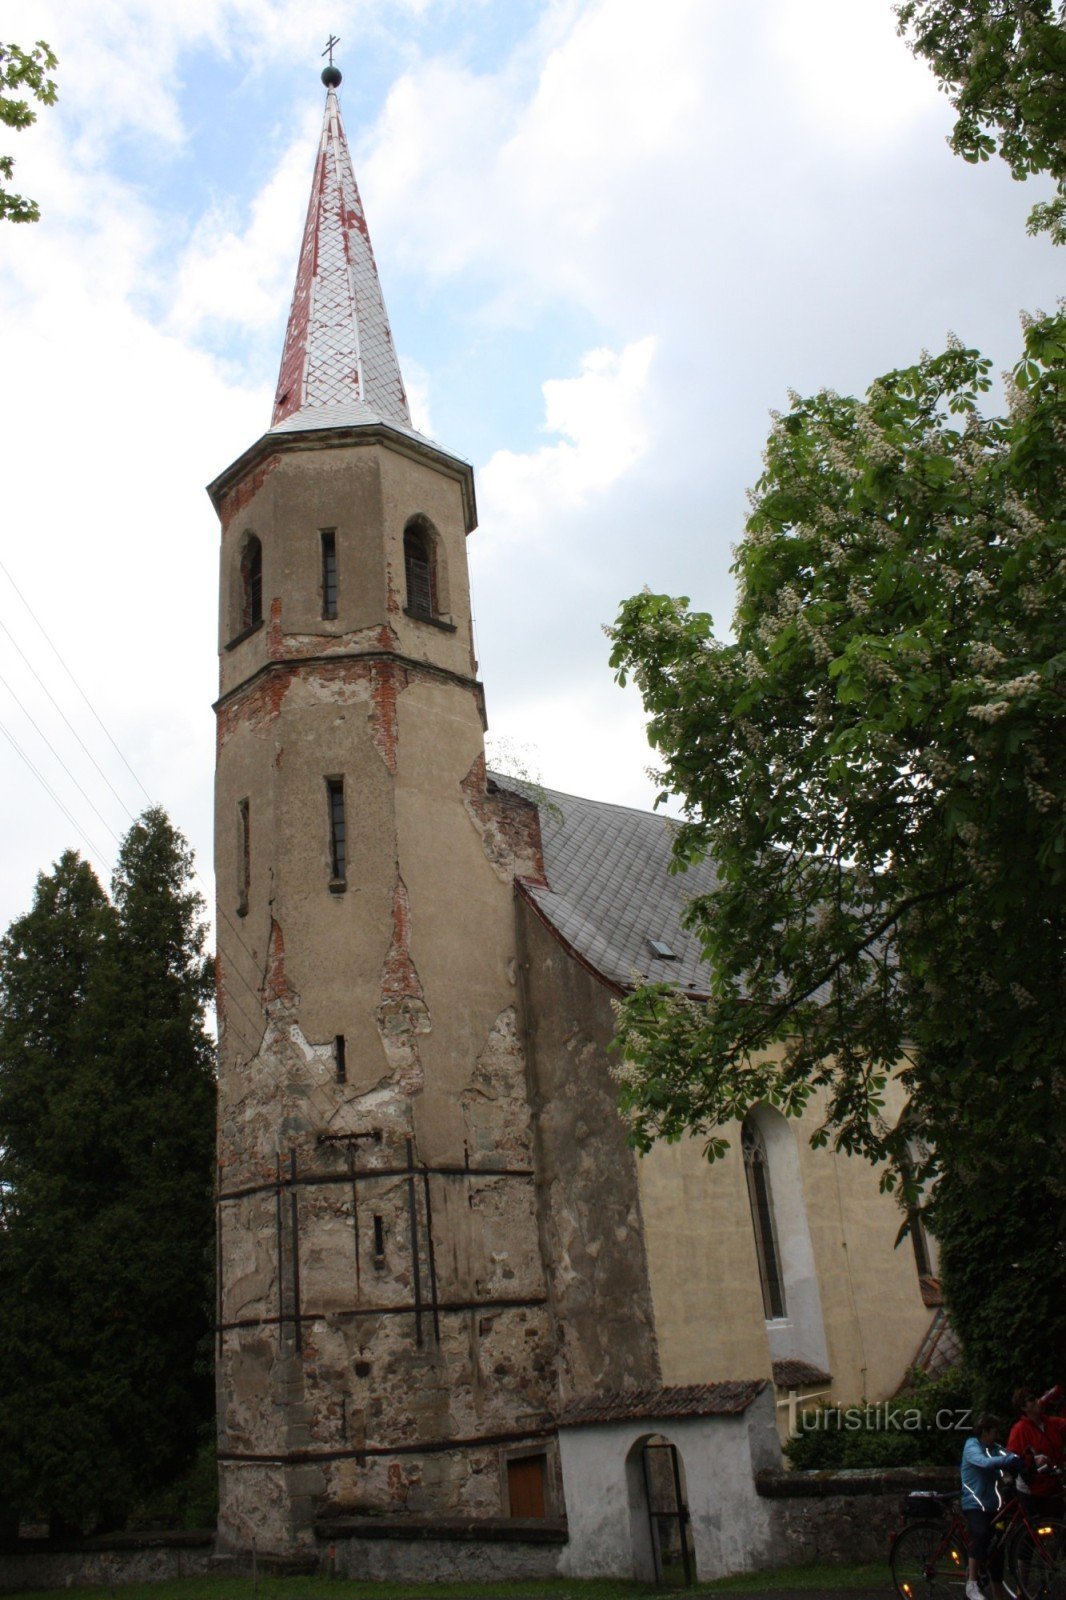 Práčov település két nevezetessége - a templom és a víztorony